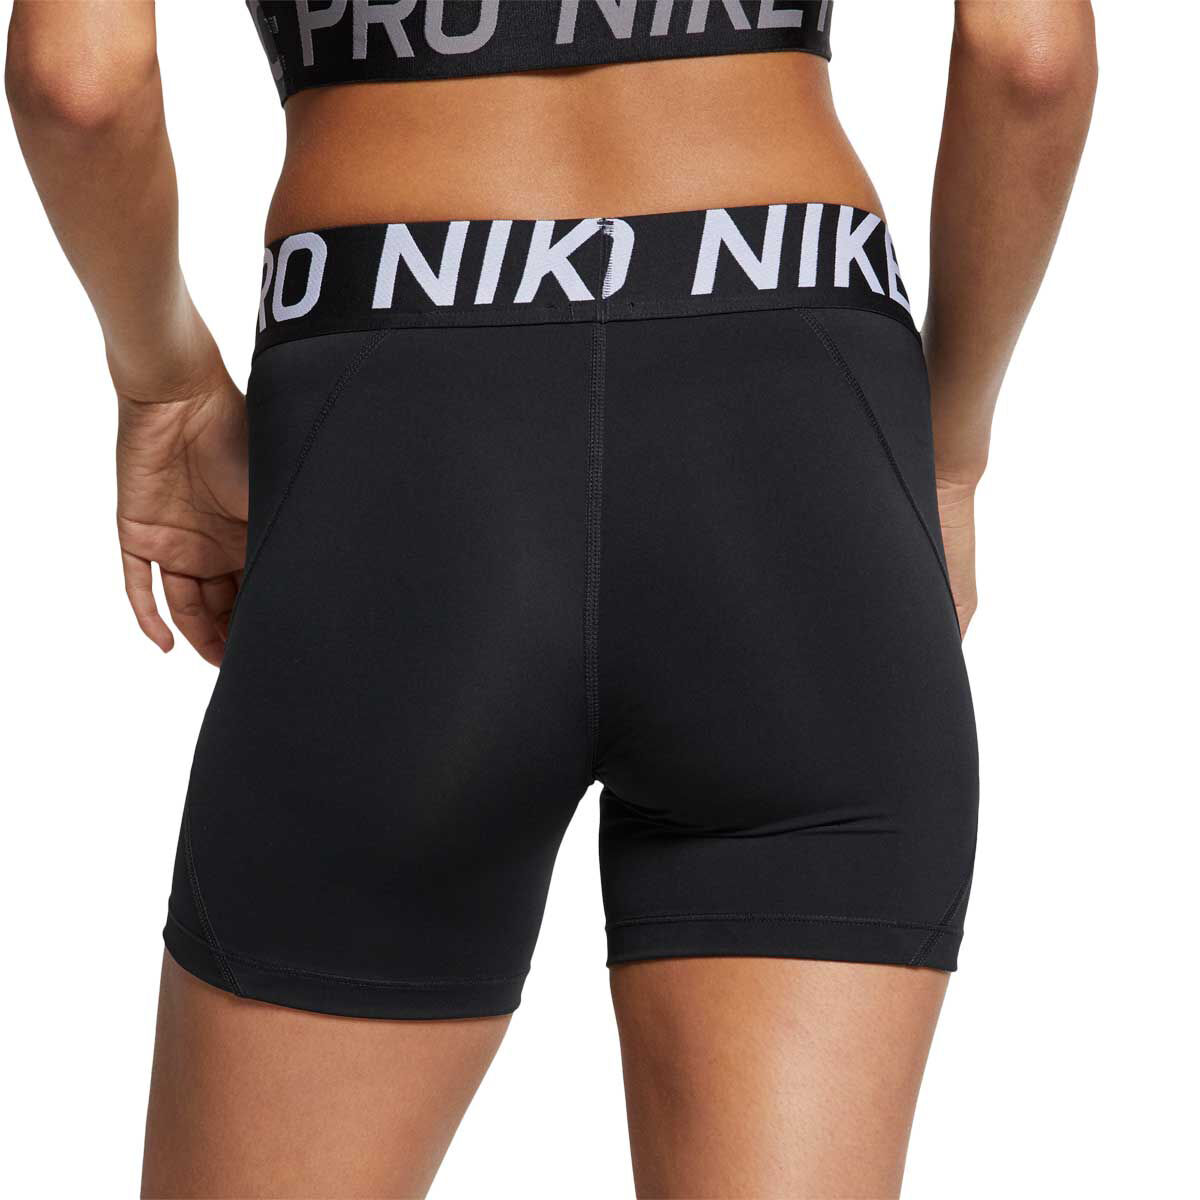 nike pro training 5 inch shorts